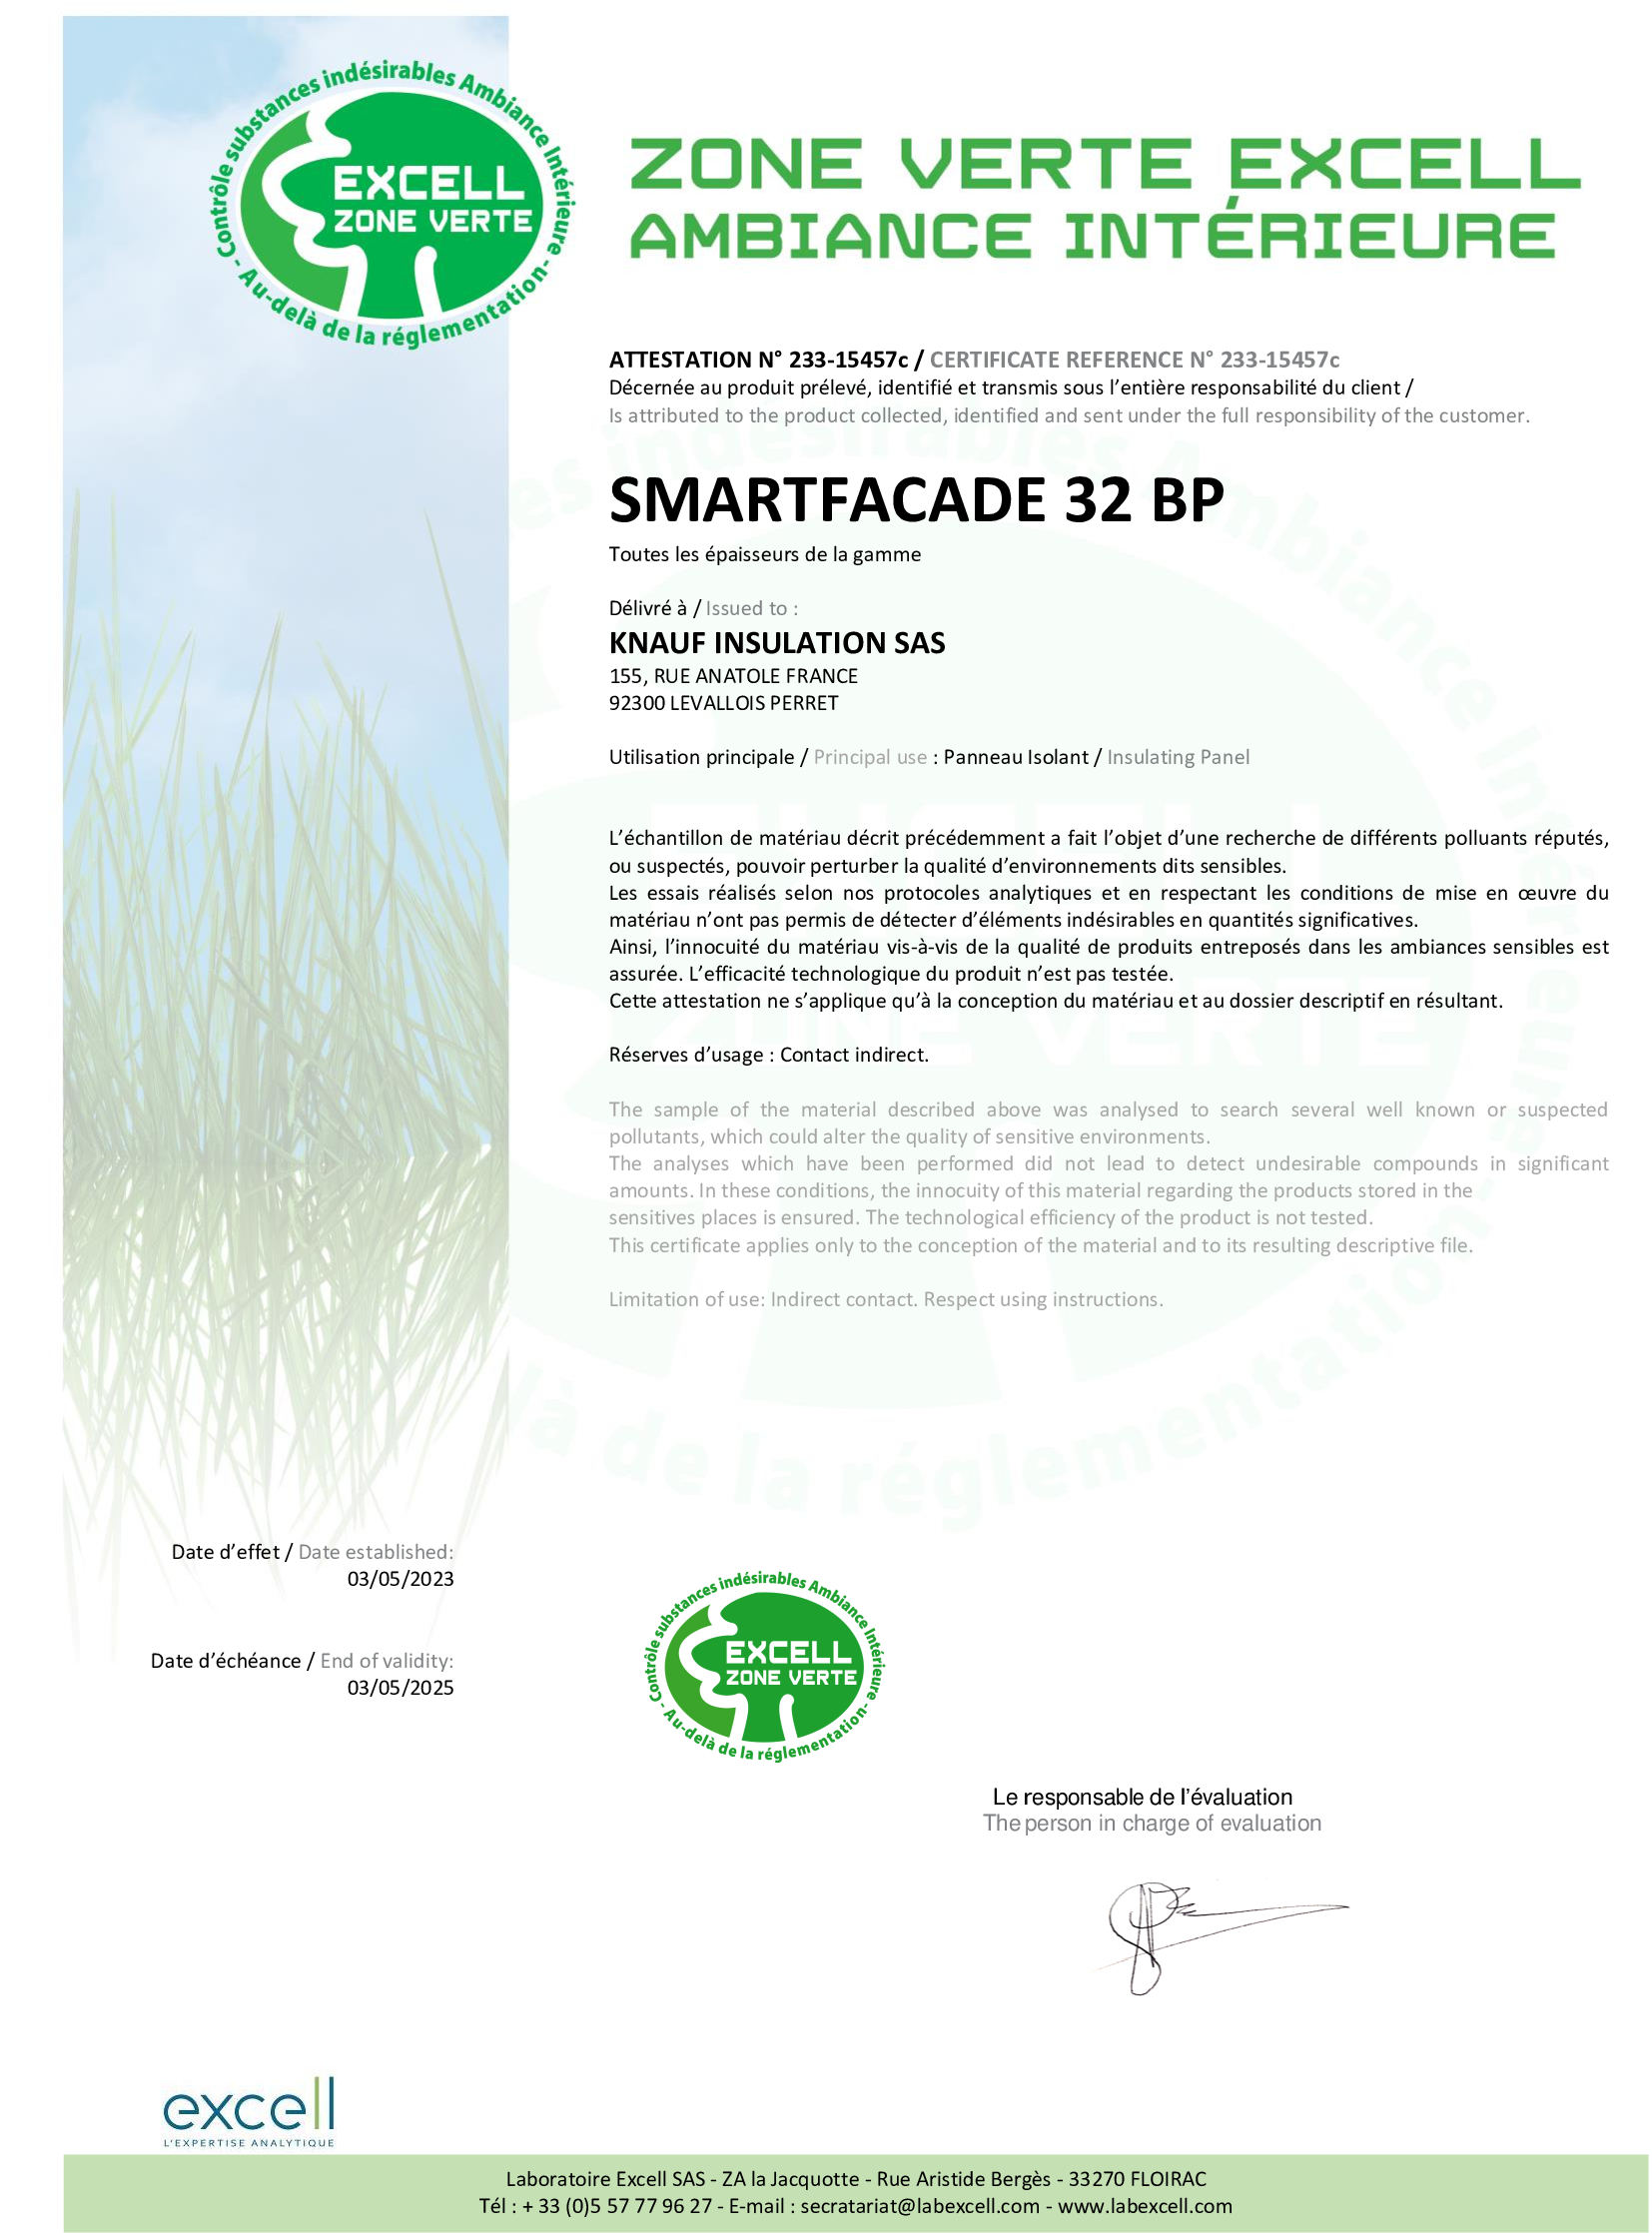 Label Excell - Smartfacade 32 BP